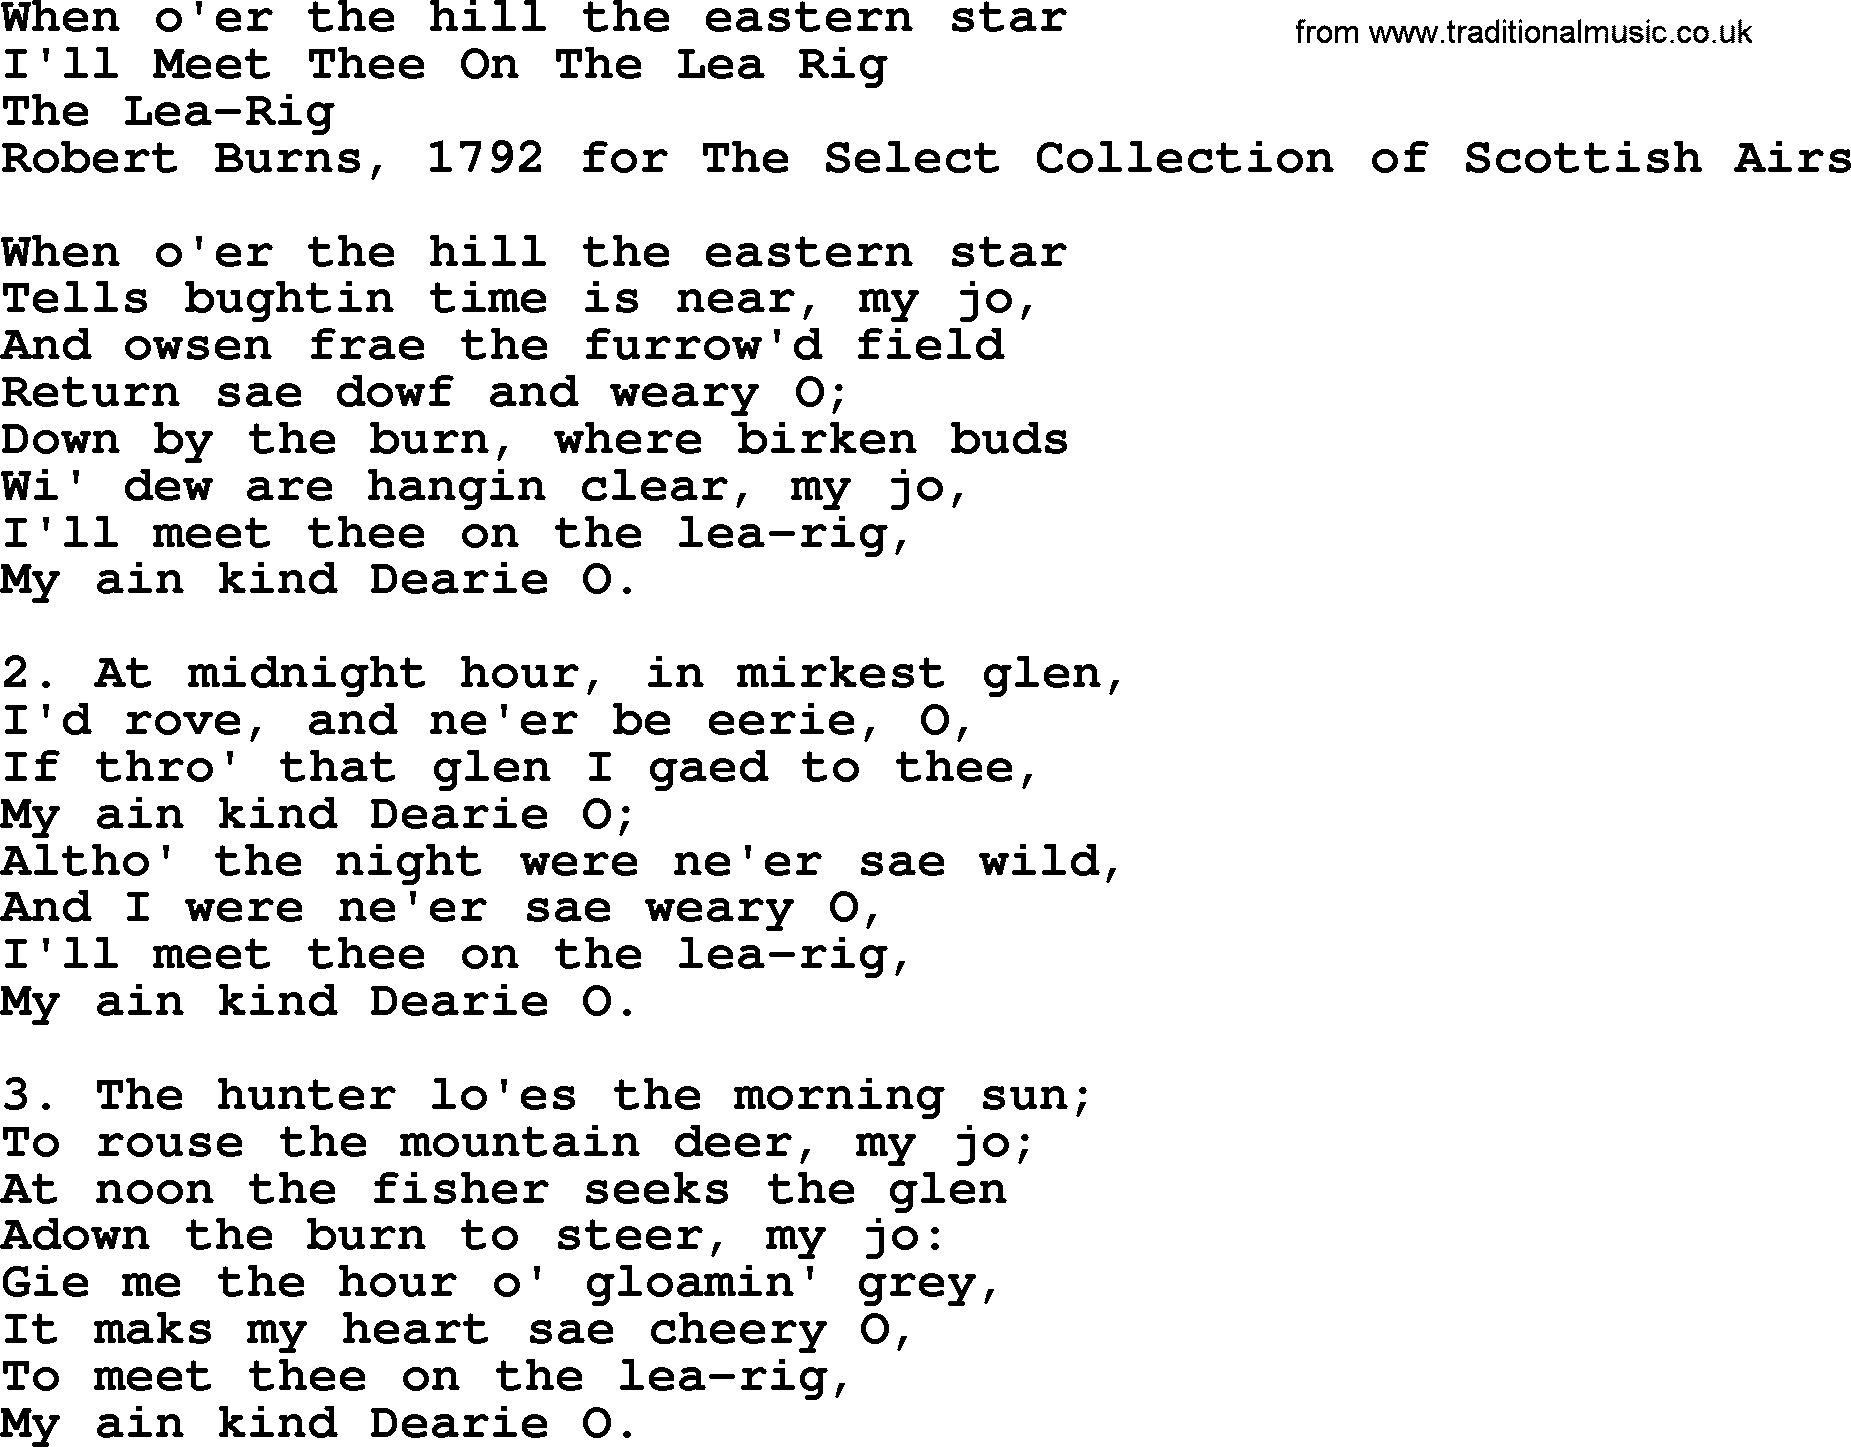 Robert Burns Songs & Lyrics: When O'er The Hill The Eastern Star